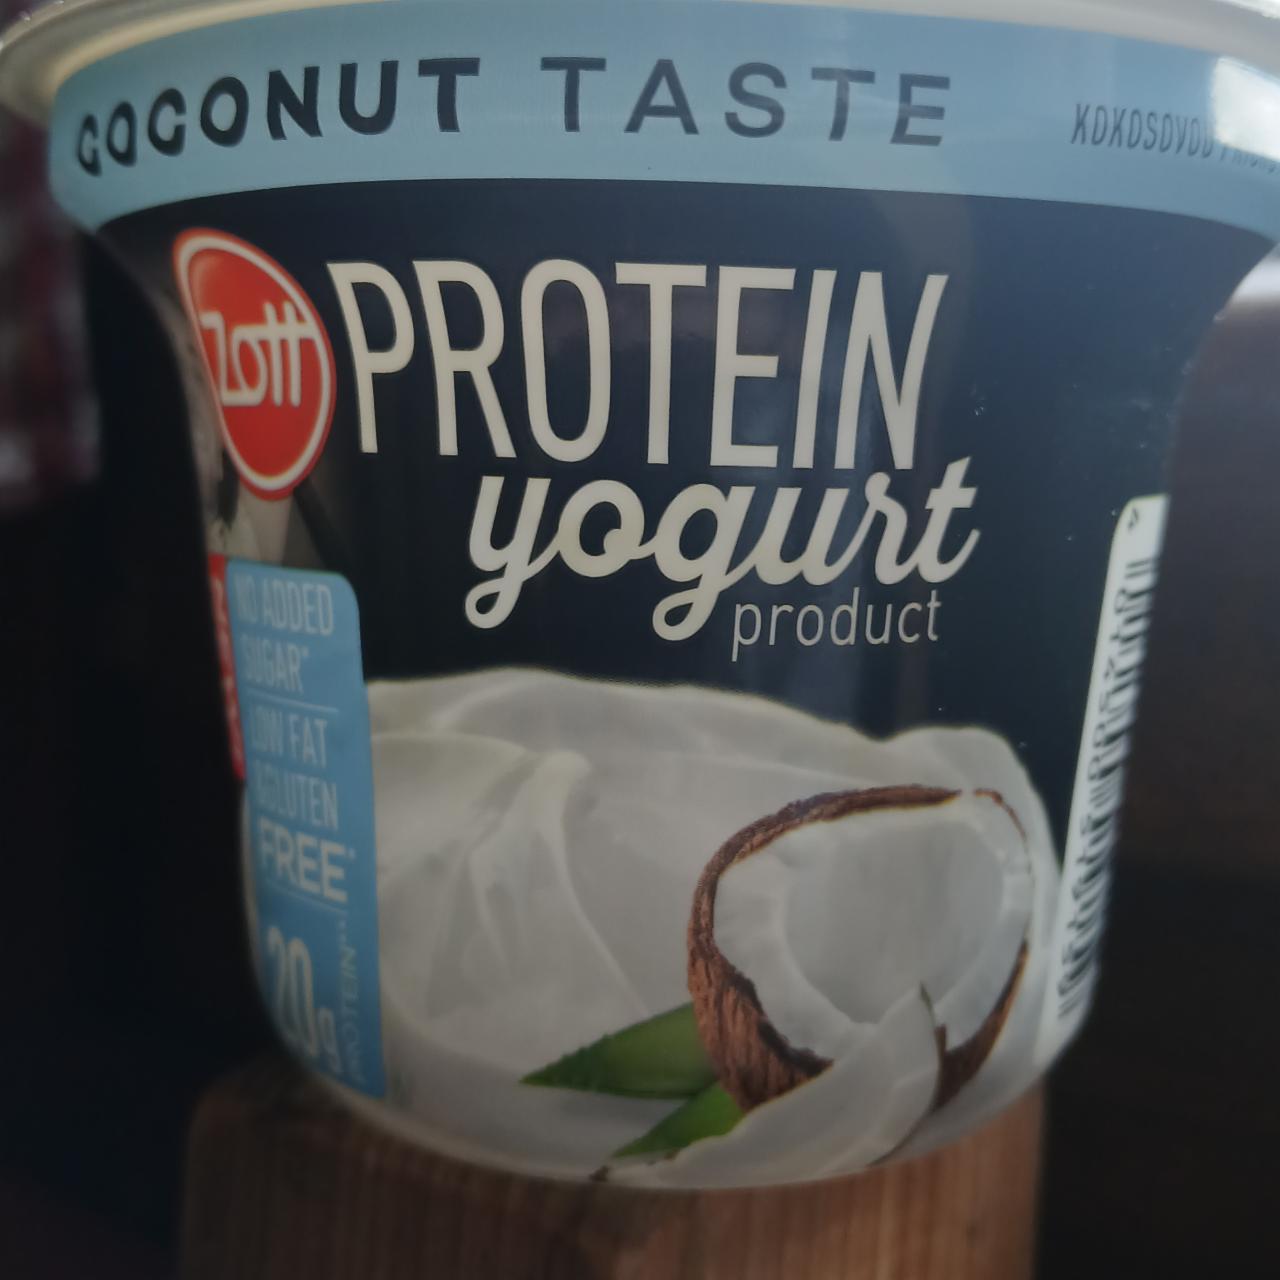 Zdjęcia - Protein yogurt product coconut taste Zott